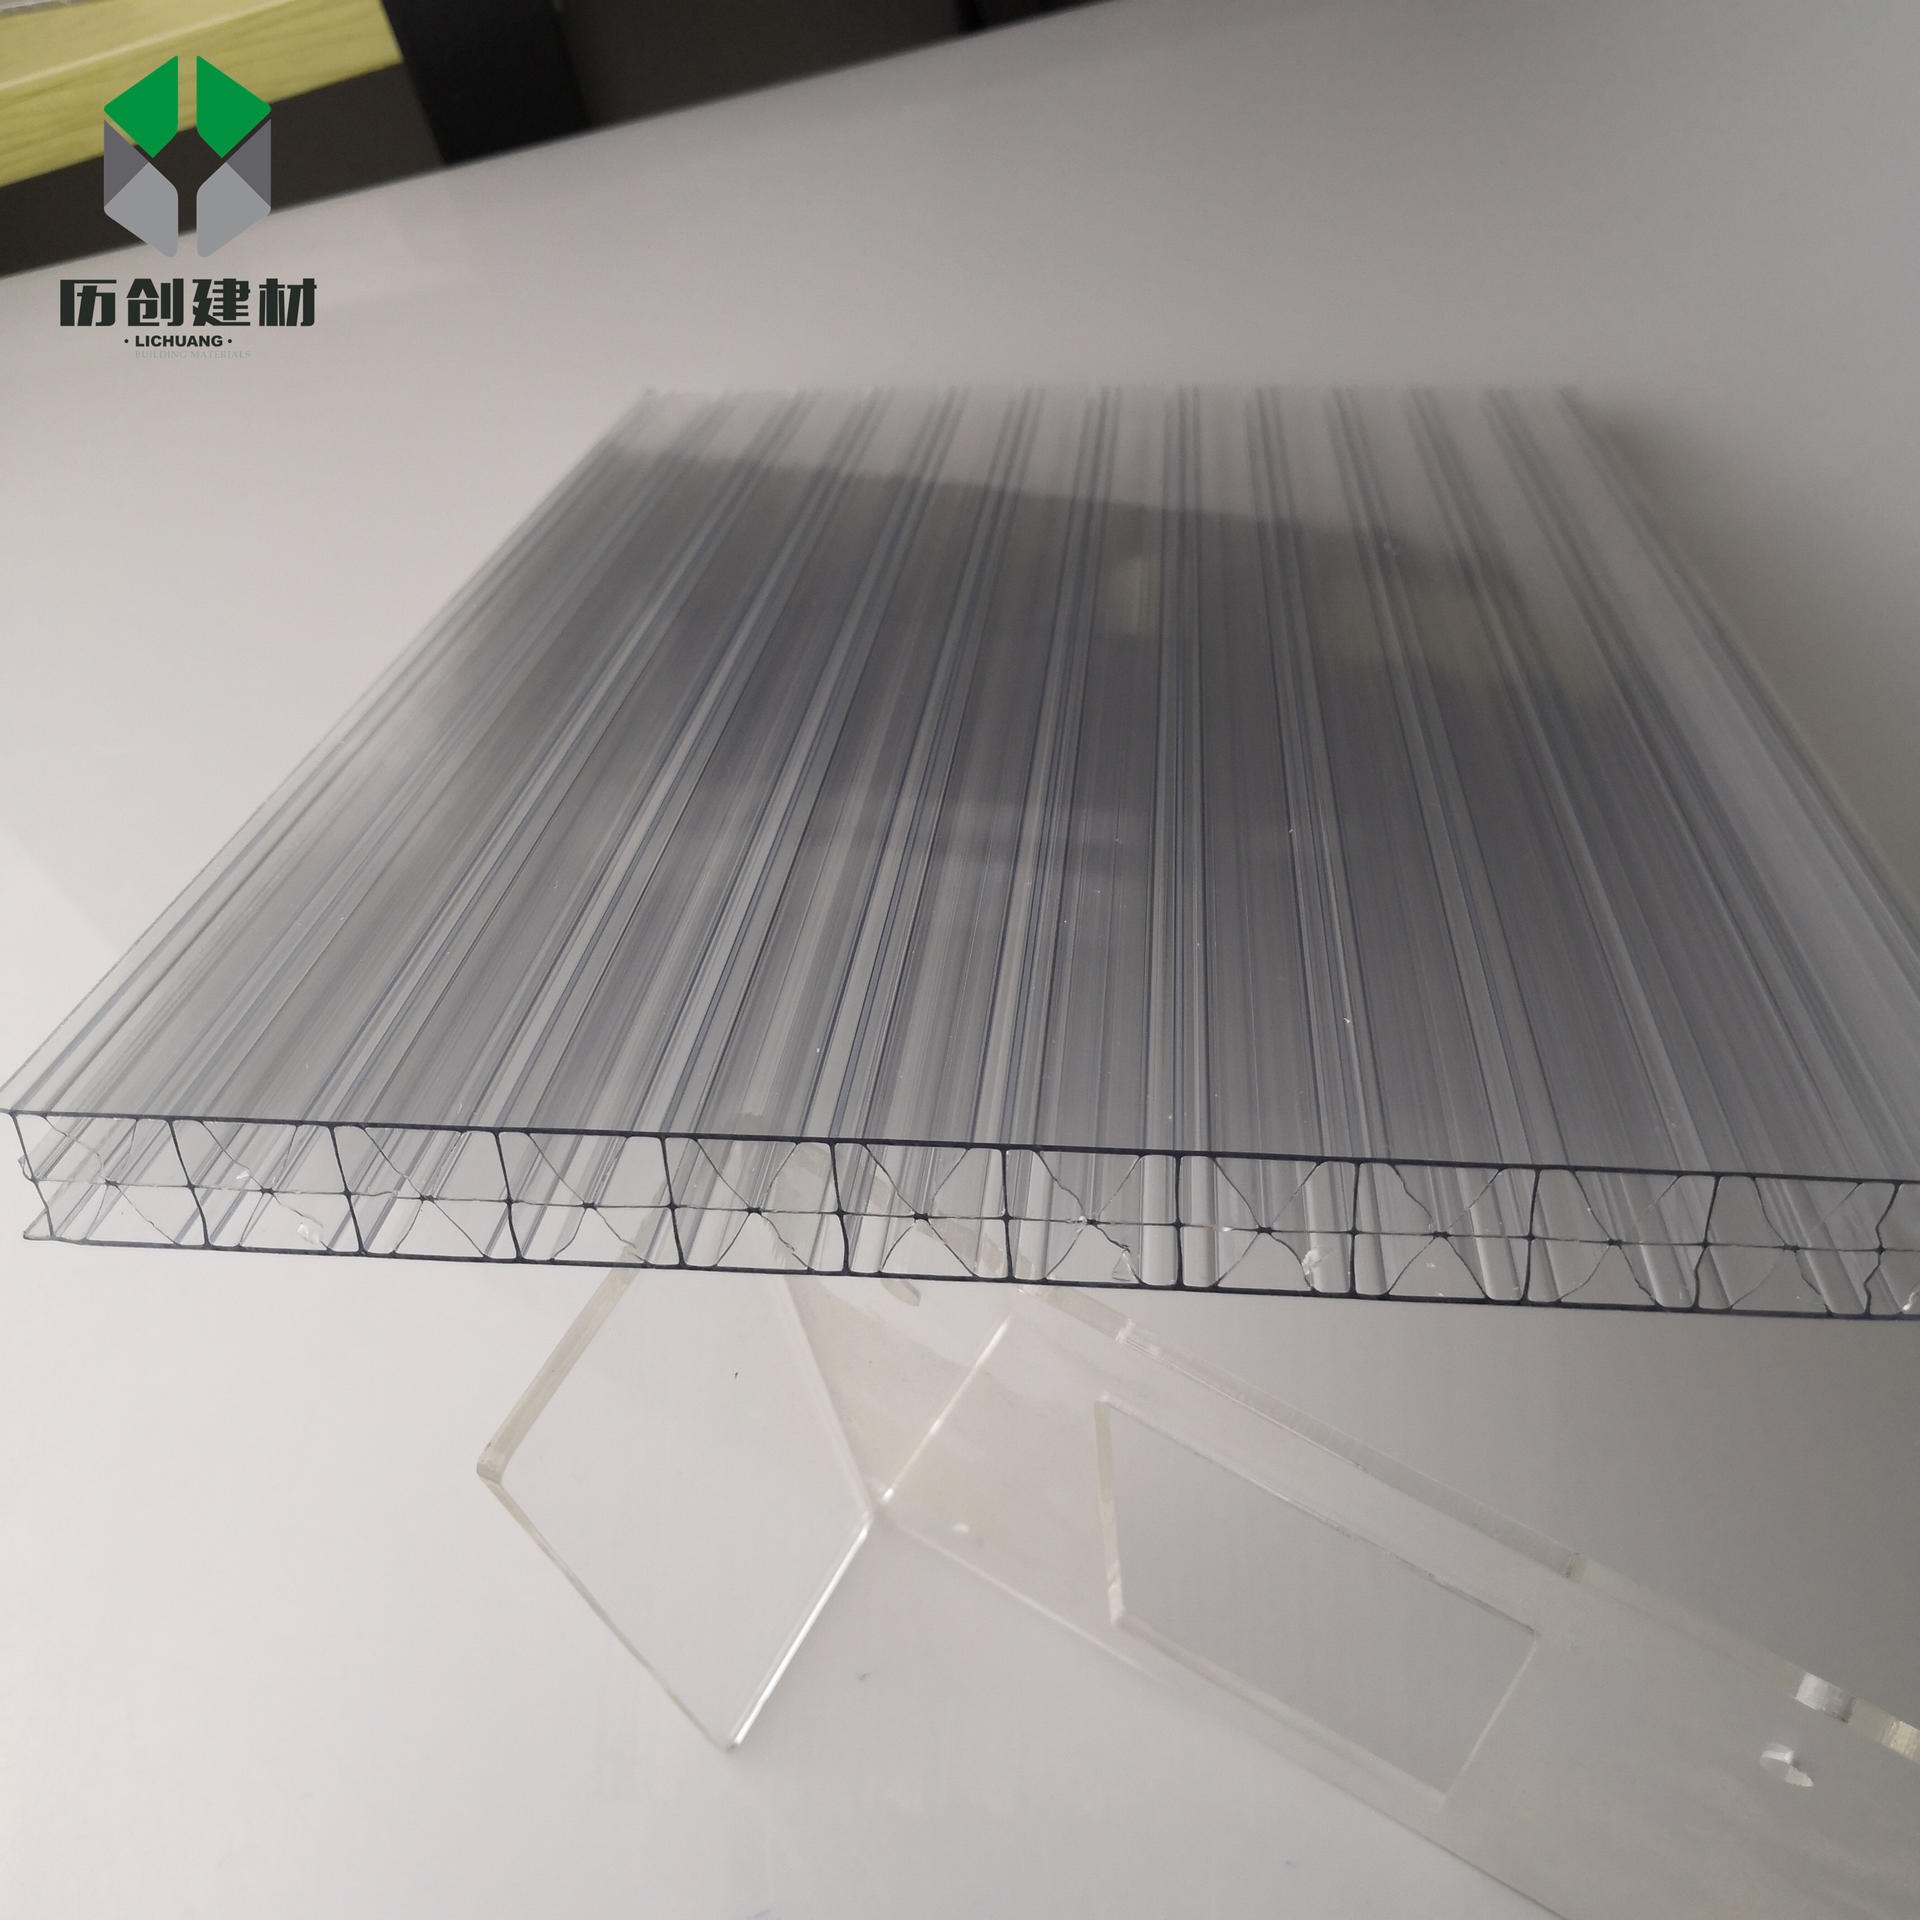 广东历创厂家批发供应18mm透明两层阳光板米字格pc板材顶棚车棚过道雨棚PC板